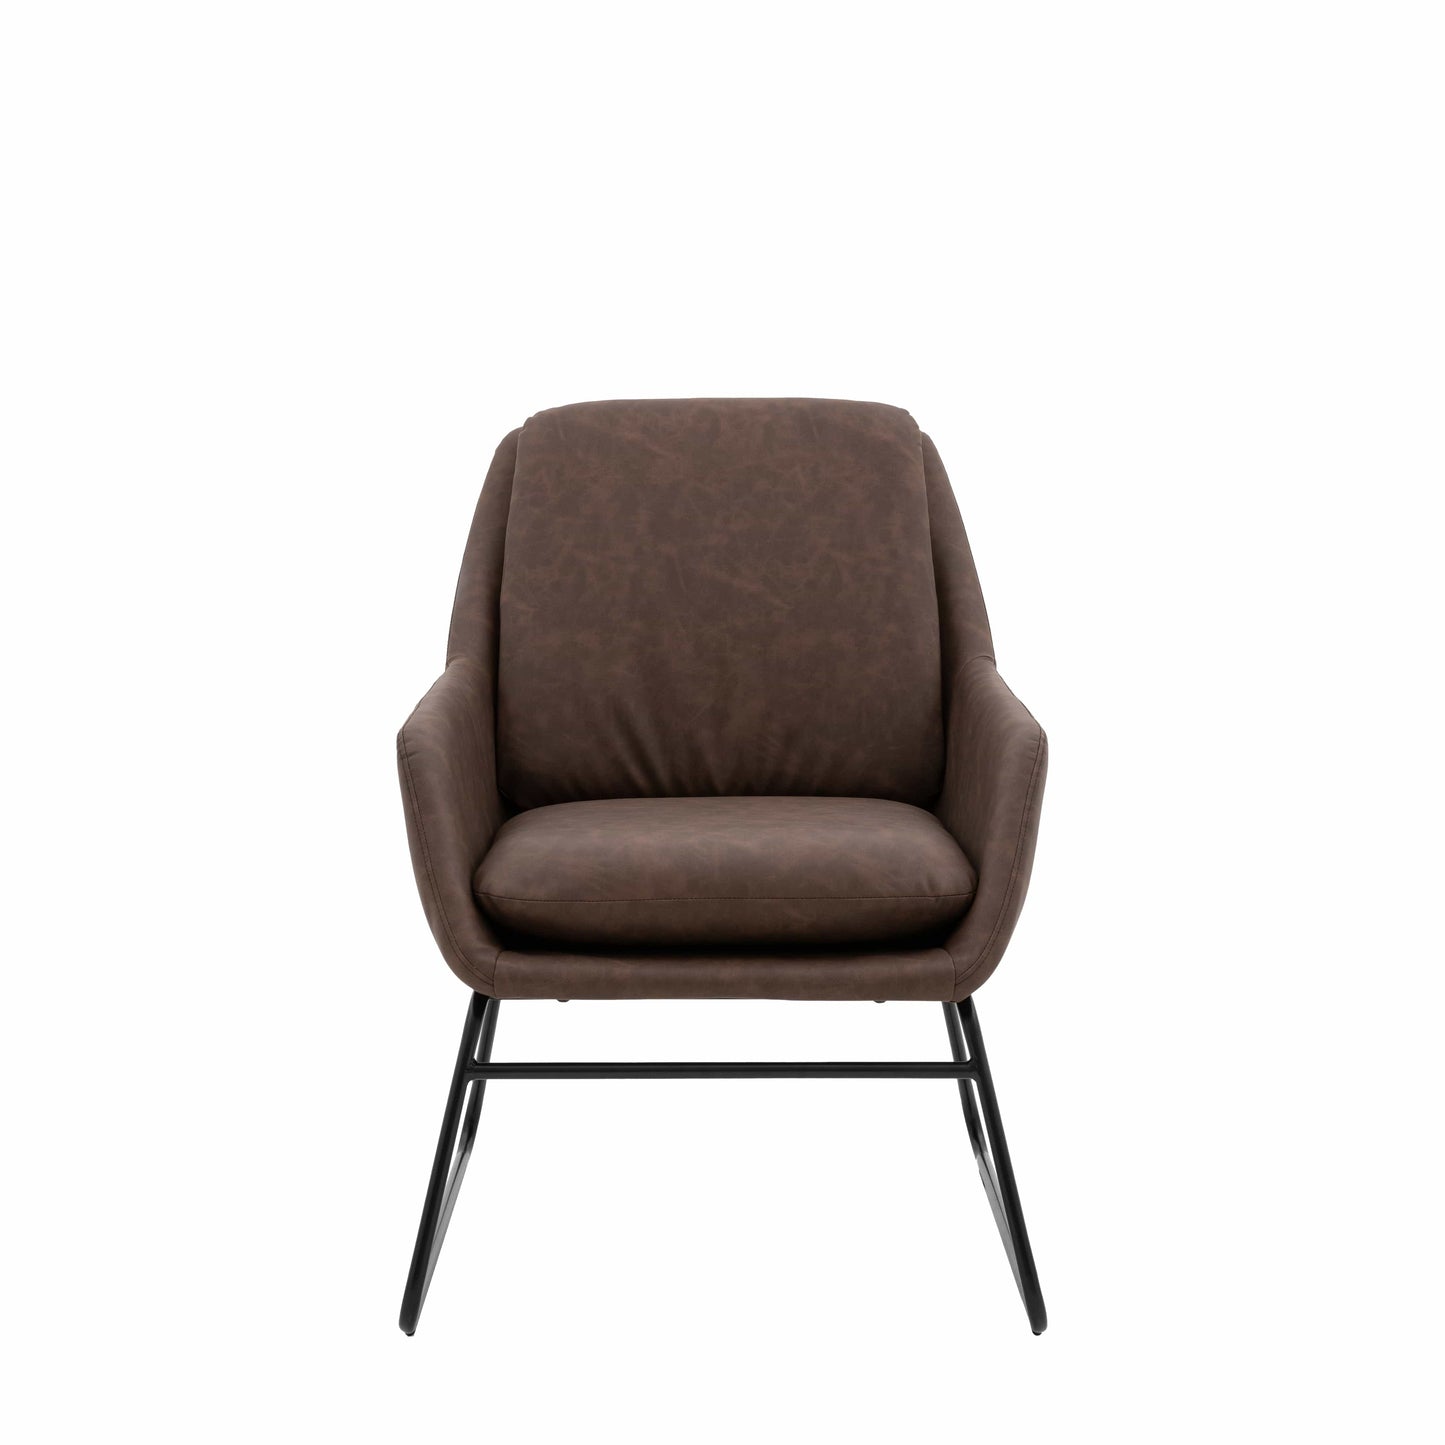 Funton Chair - Colour Options